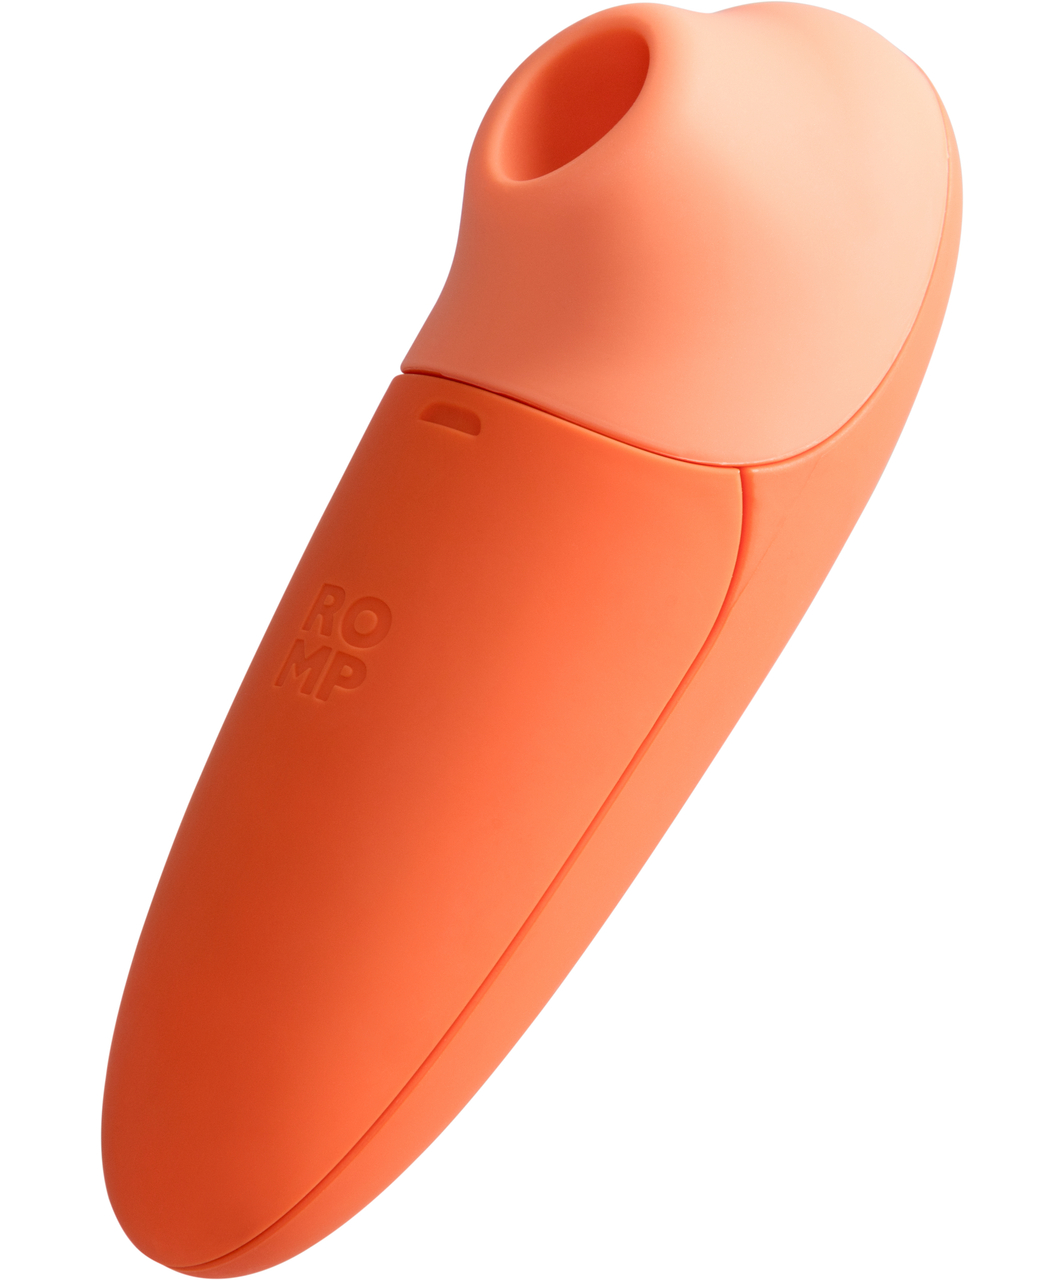 Romp Switch X Pleasure Air clitoral stimulator